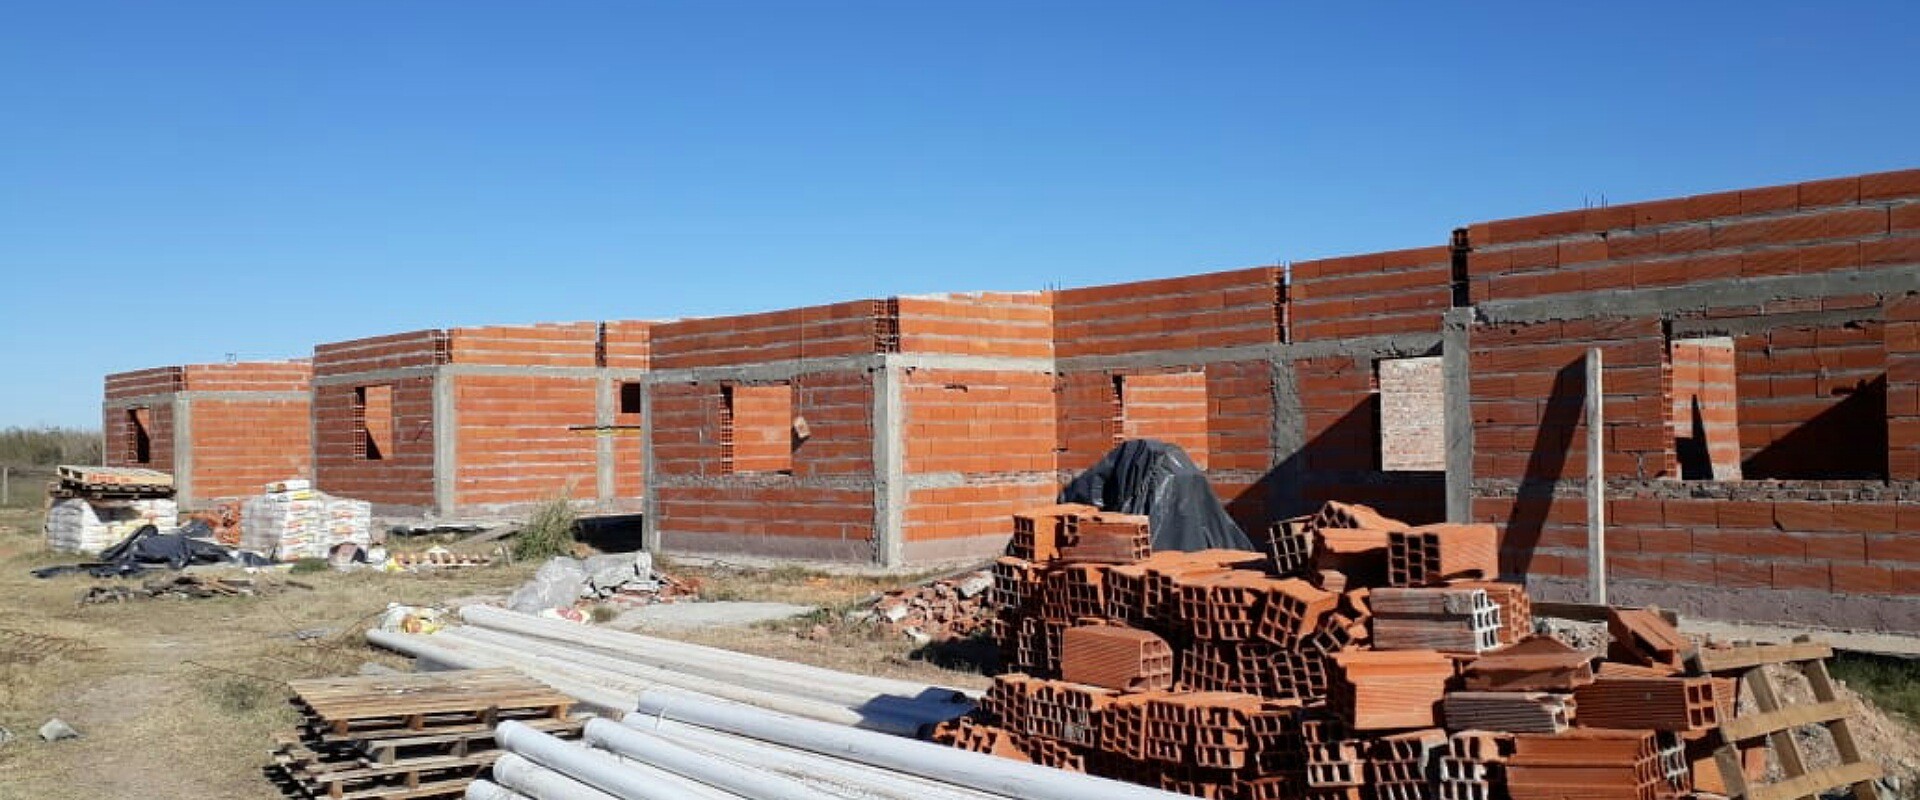 Con recursos provinciales se construyen viviendas en tres localidades entrerrianas